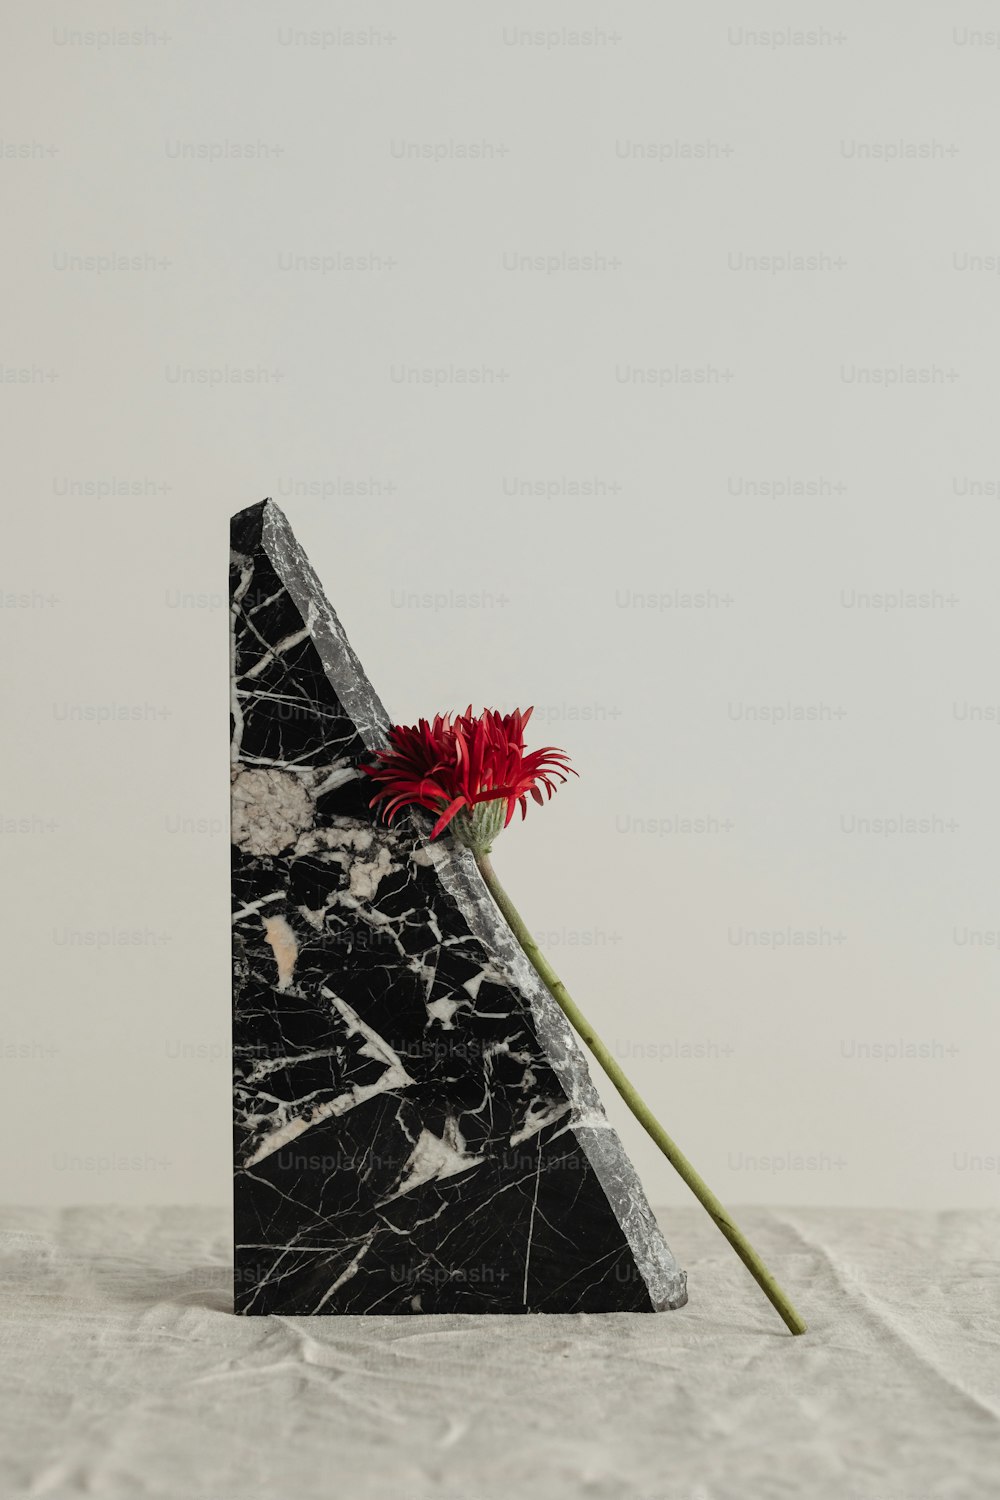 Una obra de arte en blanco y negro con una flor roja en ella